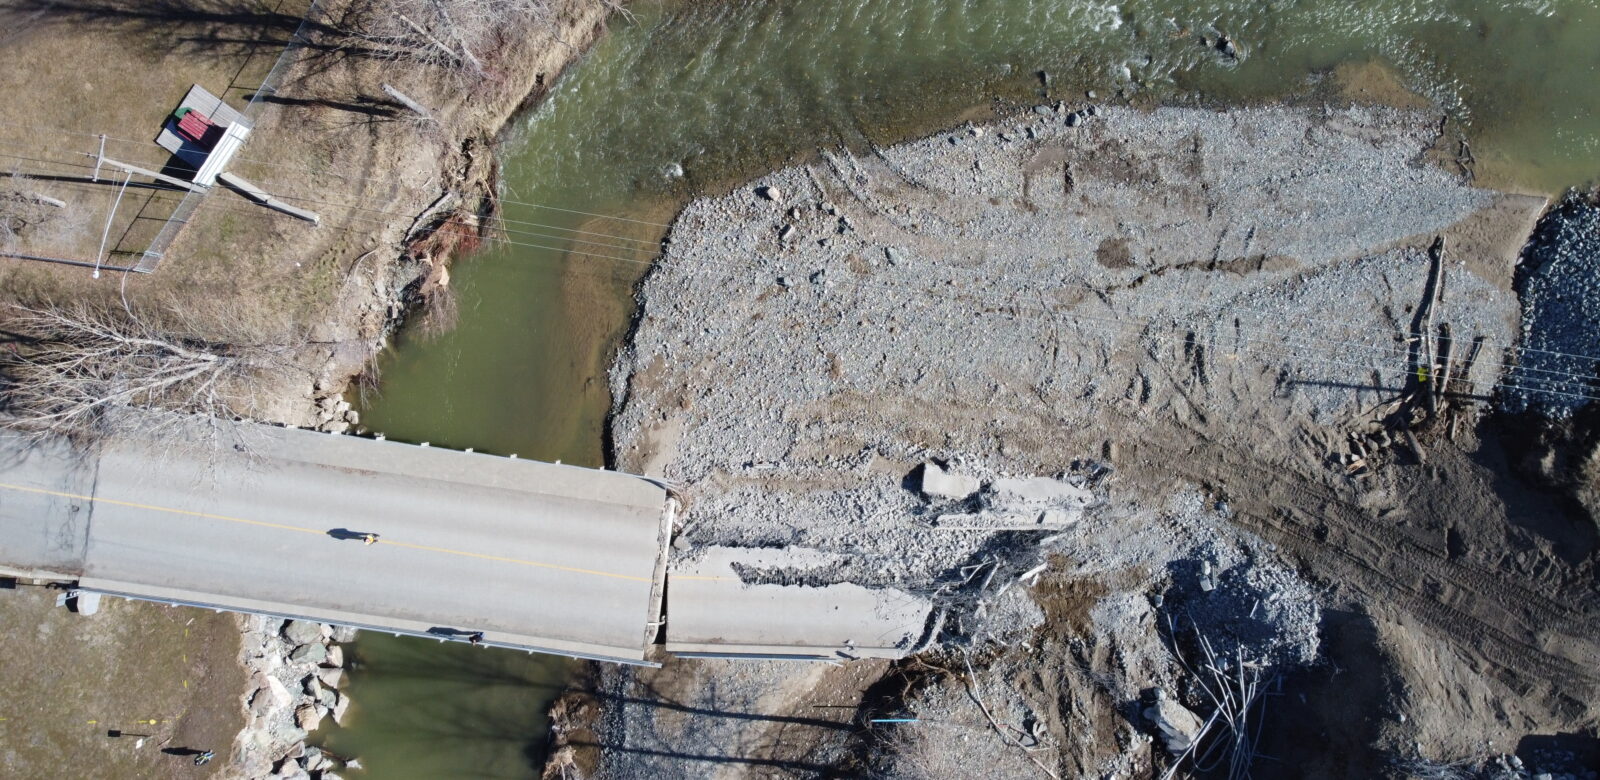 BC River Debris Removal Program